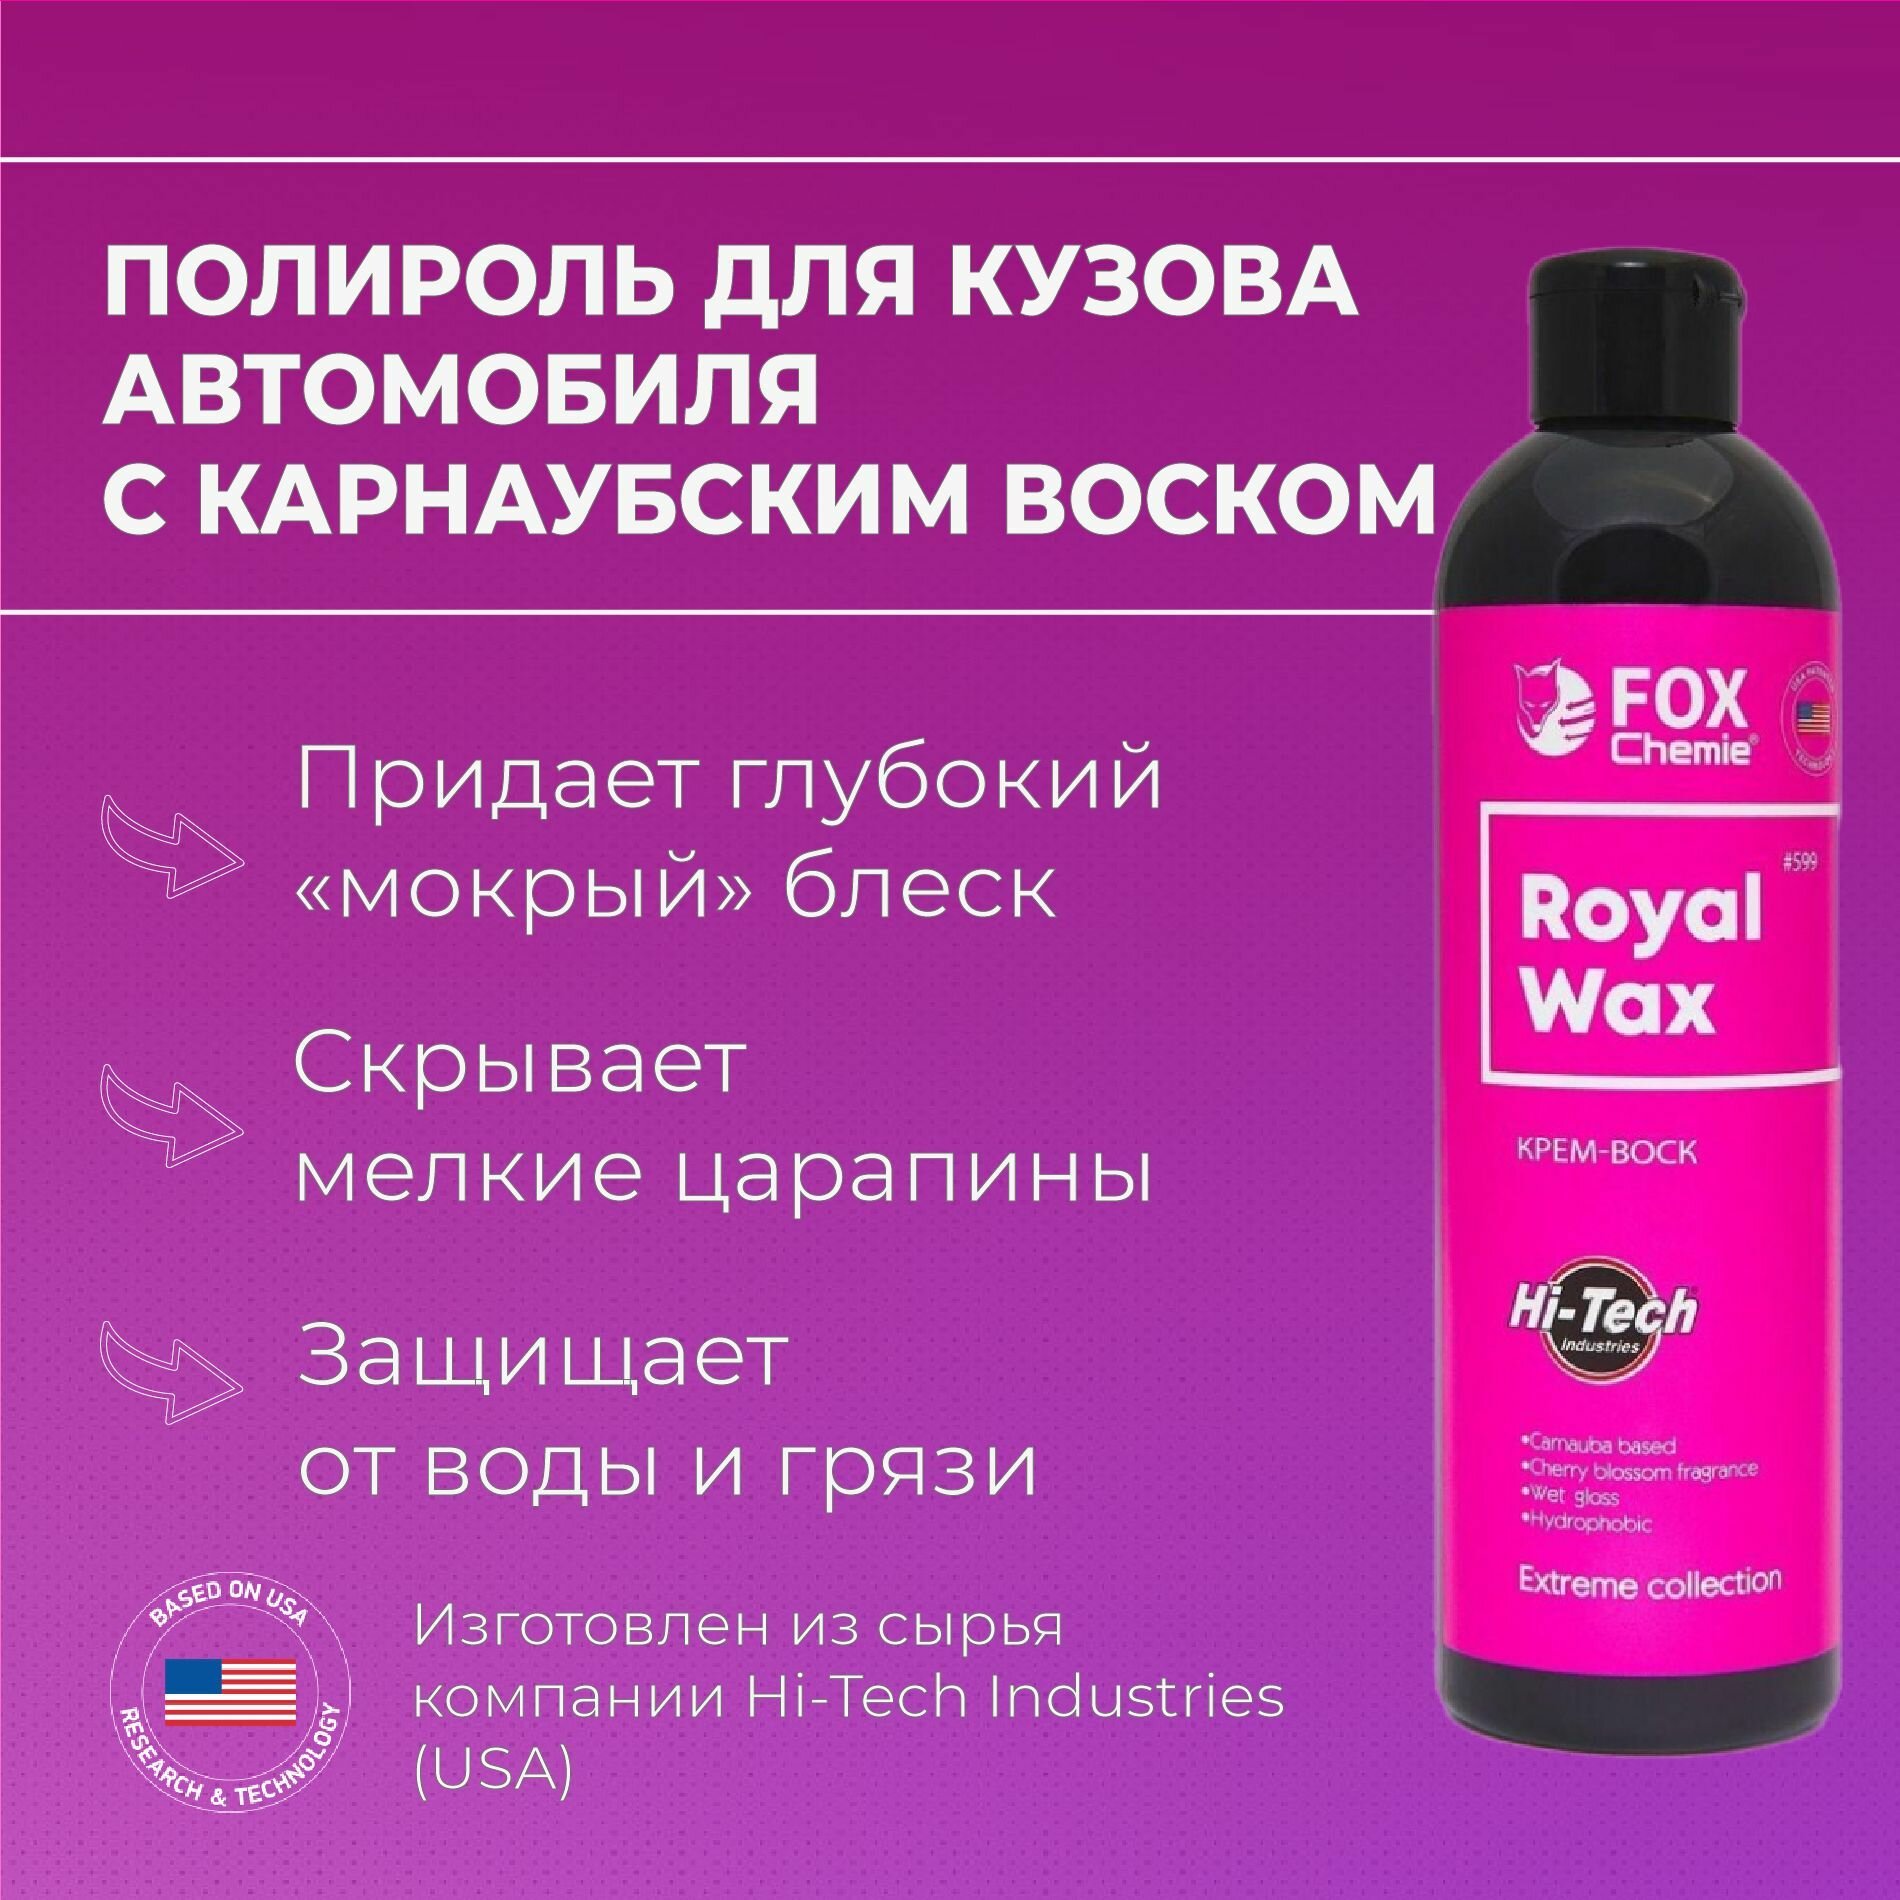 Полироль для автомобиля, воск, паста Royal Wax от Fox Chemie